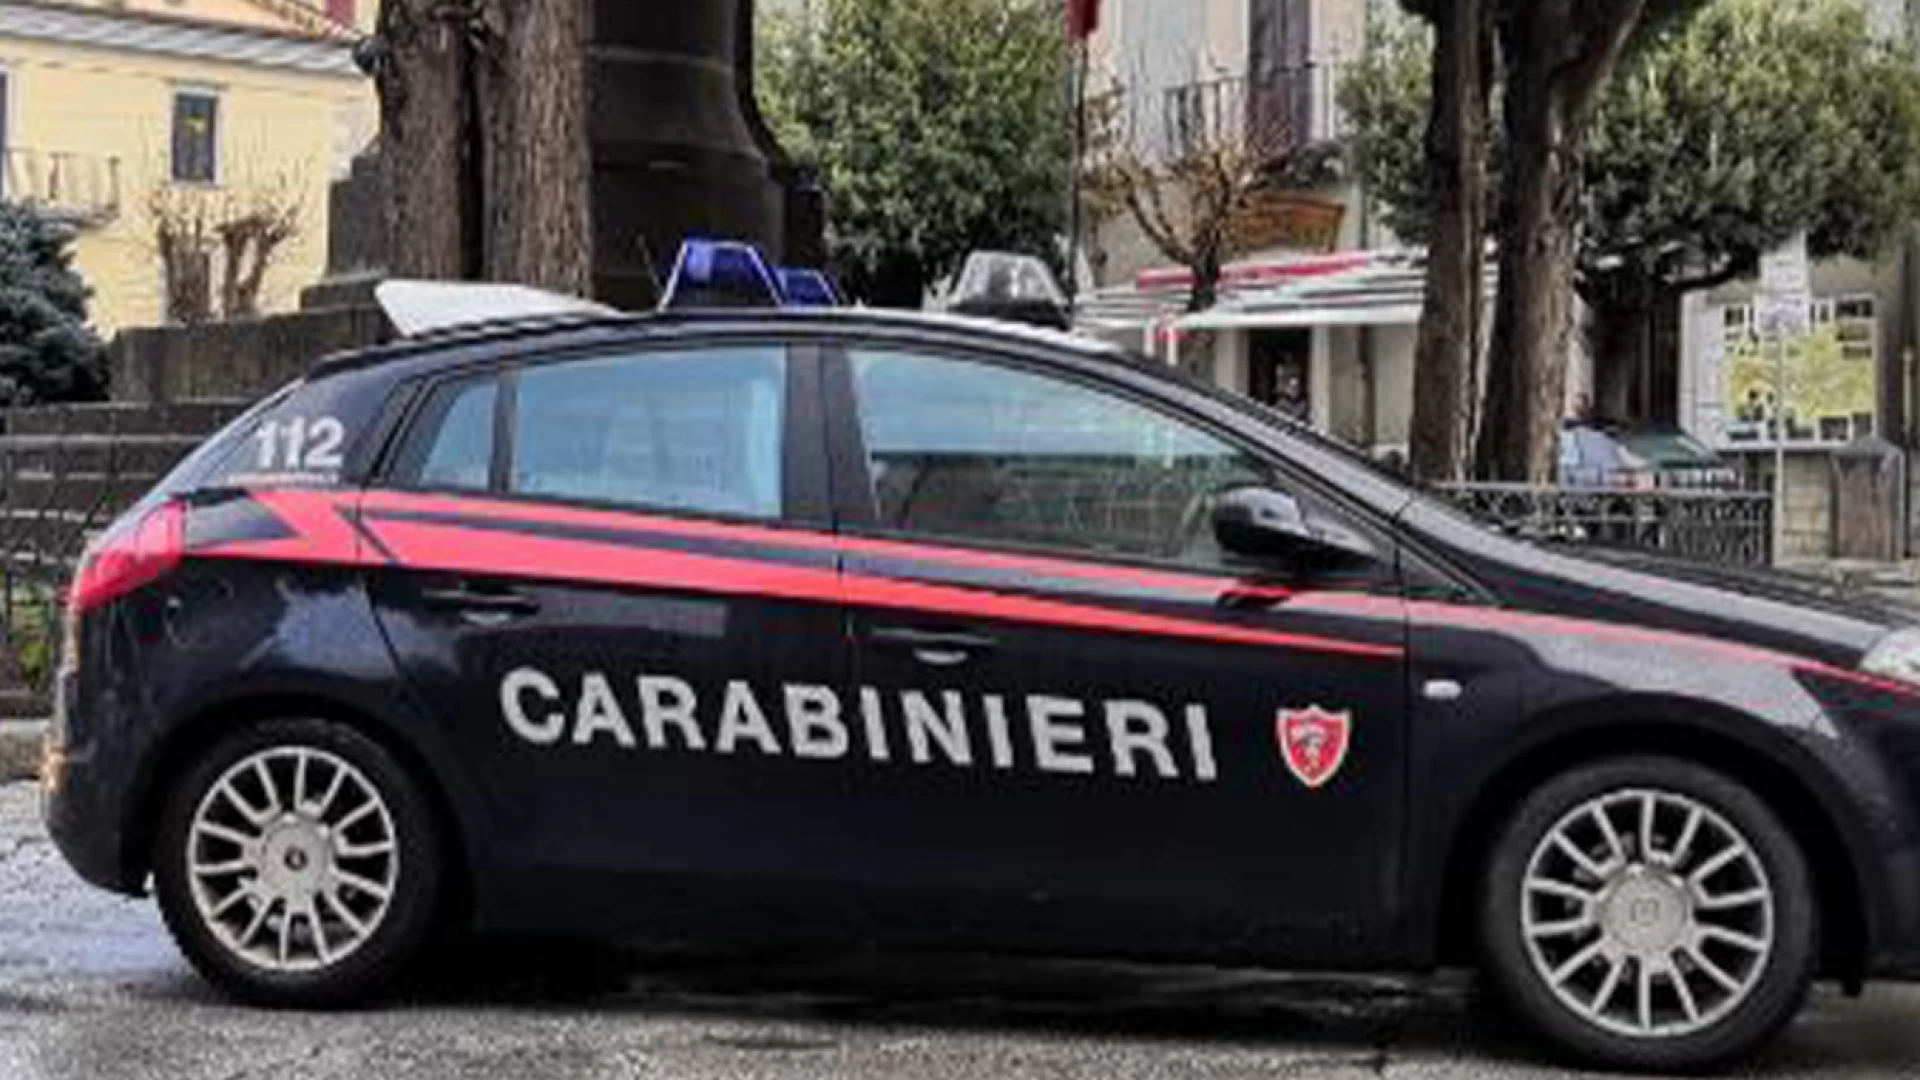 Agnone: Consegna a domicilio di sostanze stupefacenti nei week end. Carabinieri individuano Pusher del “porta a porta”.